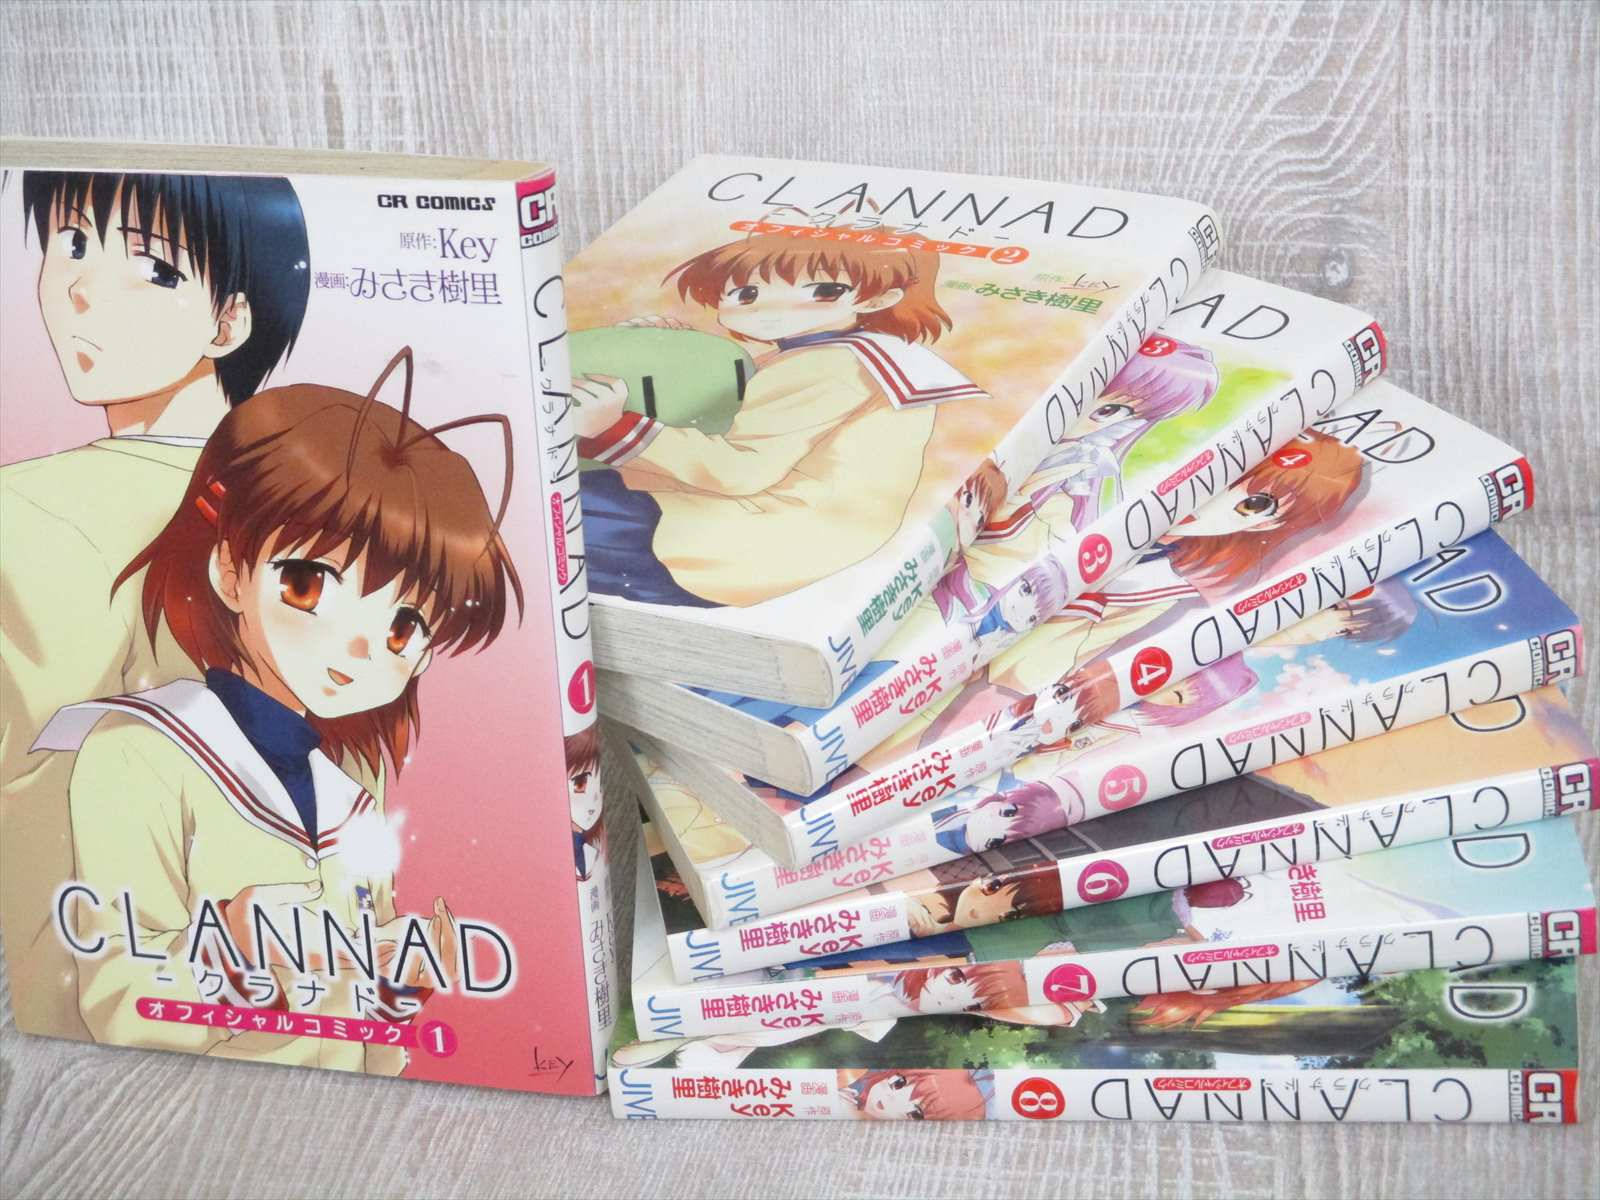 Clannadmanga Books - Clannad Manga Böcker Wallpaper